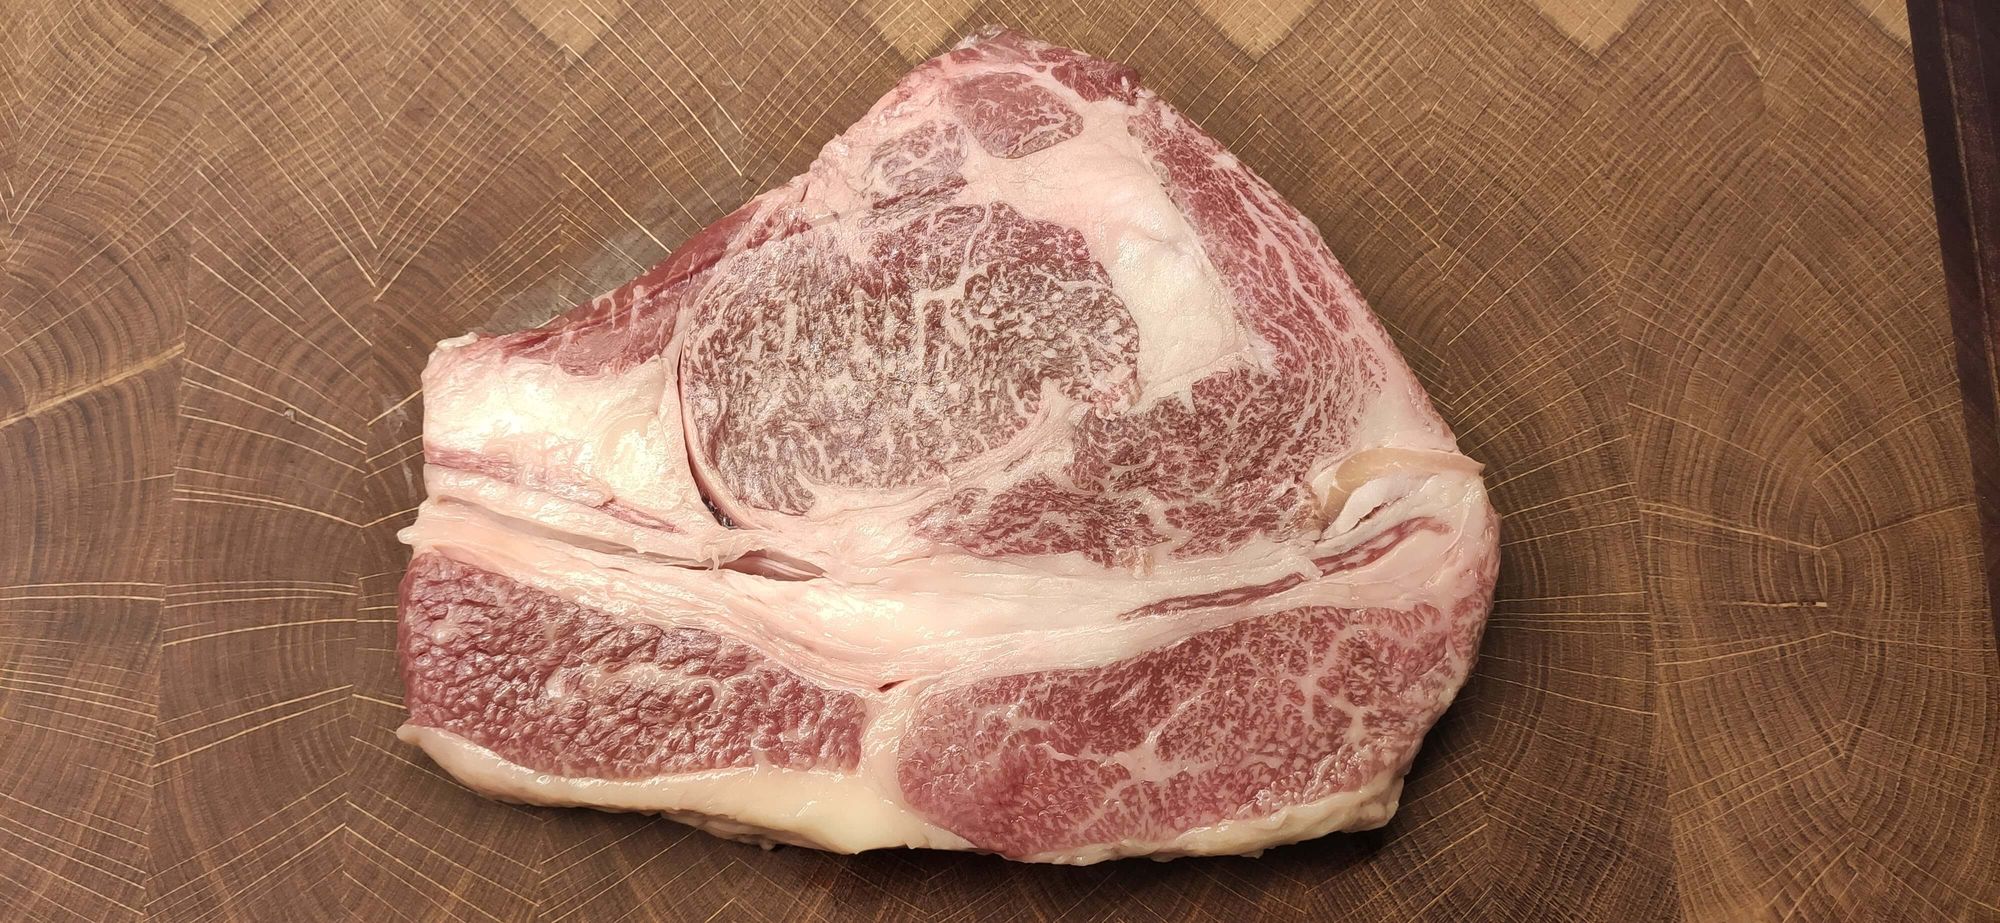 Wagyu Beef - das beste Steak der Welt?